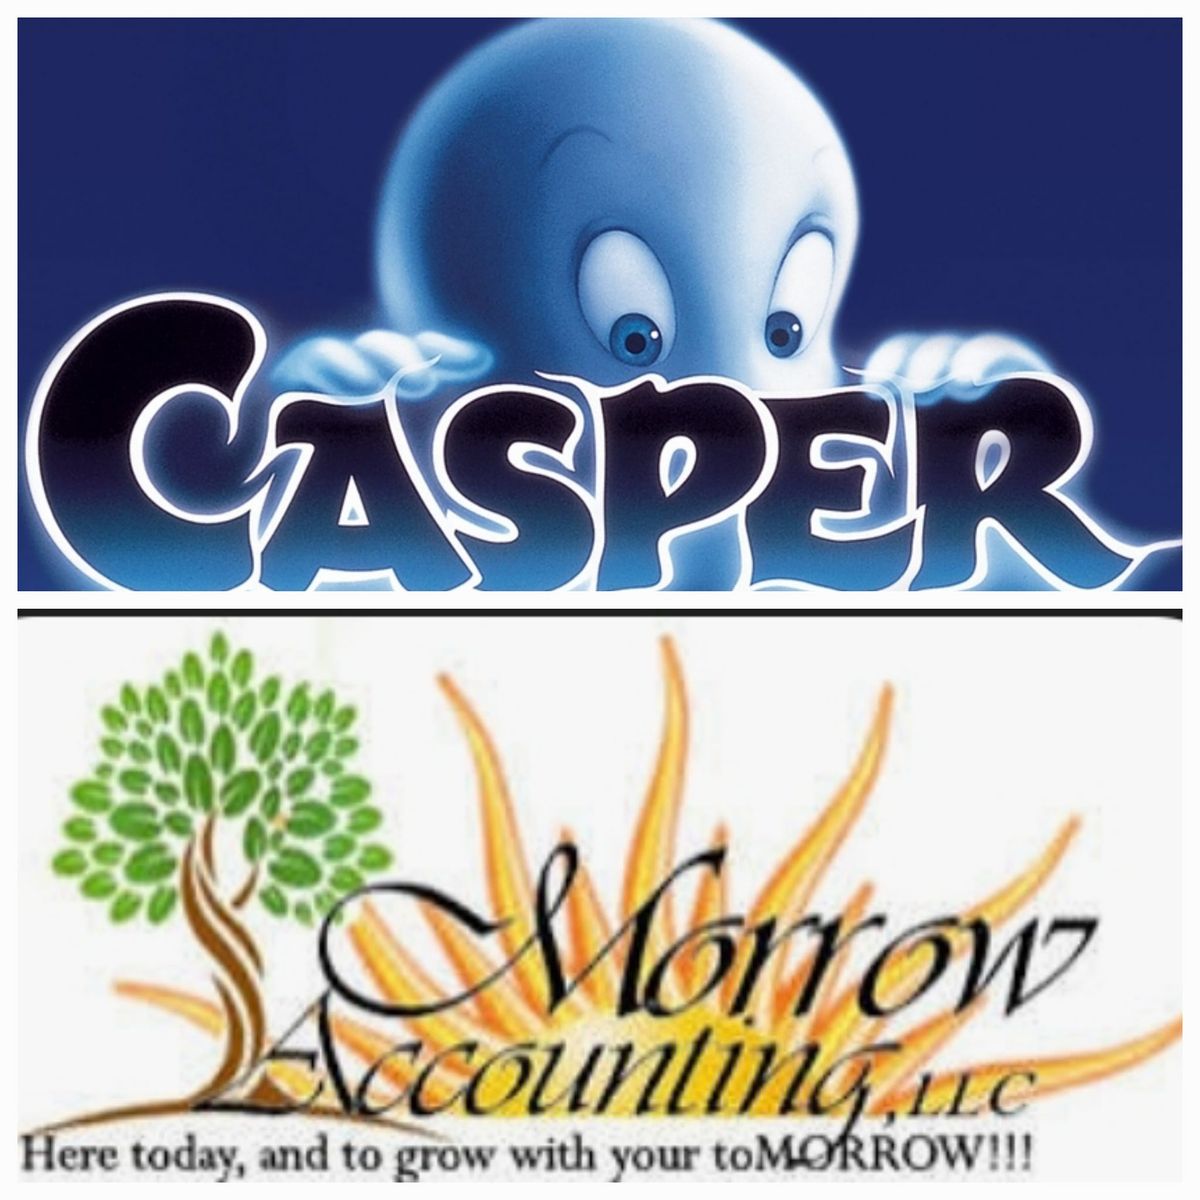 Free Showing of Casper